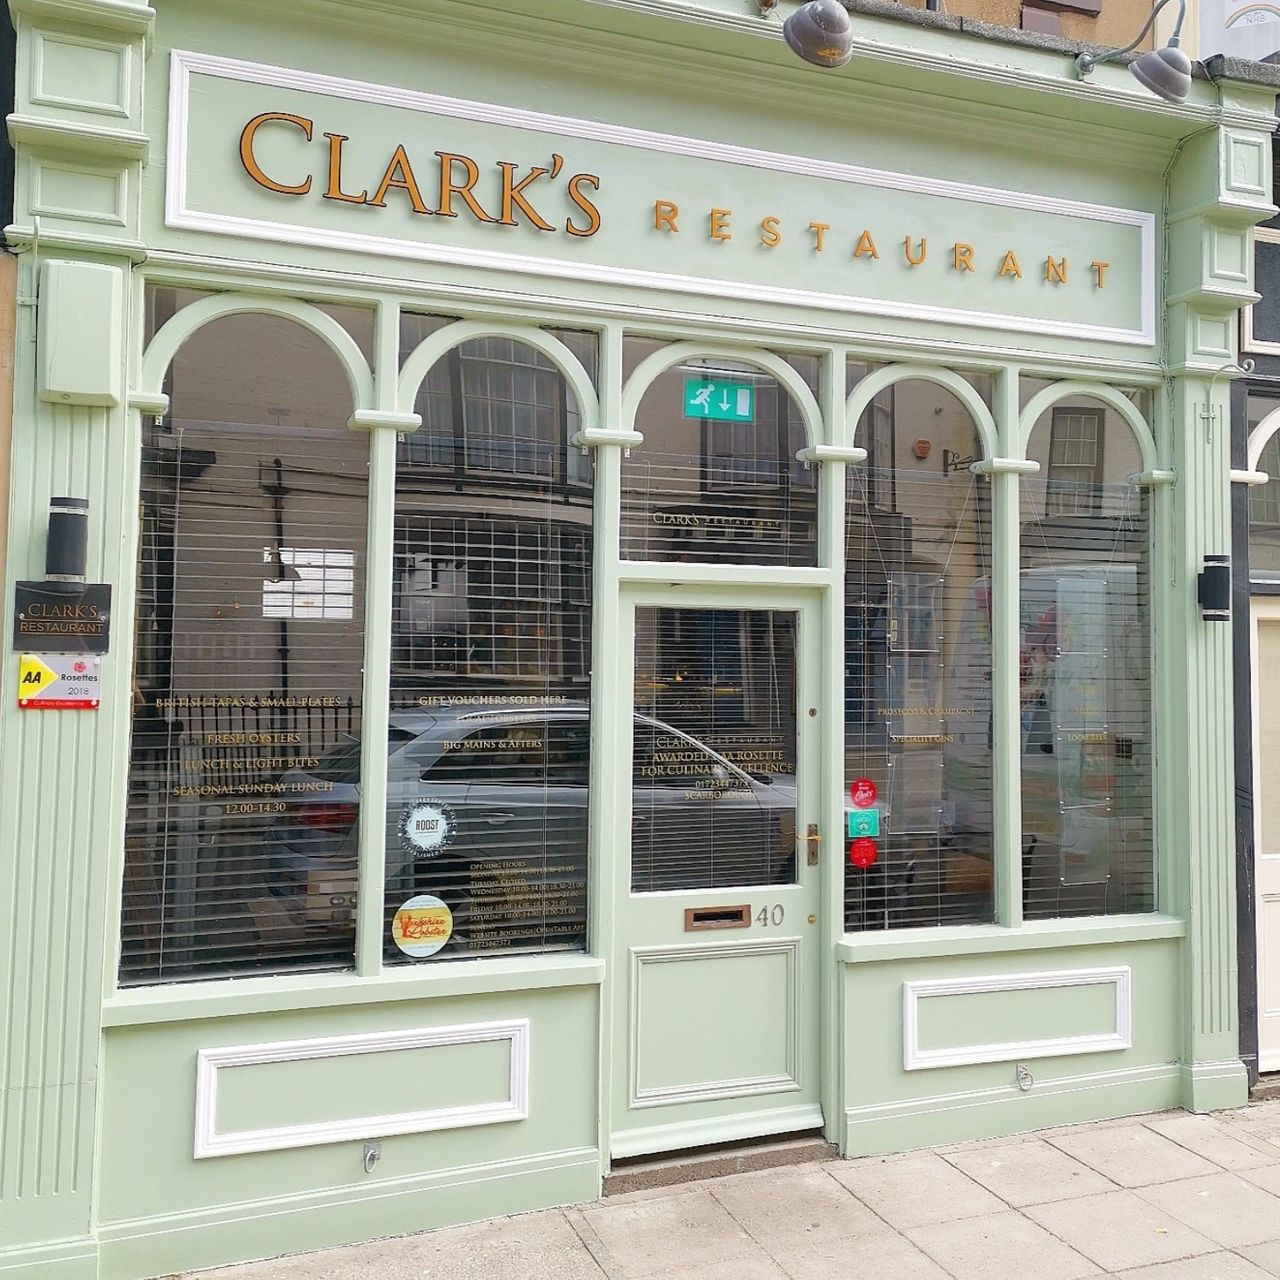 Clark's Restaurant, Scarborough, UK 